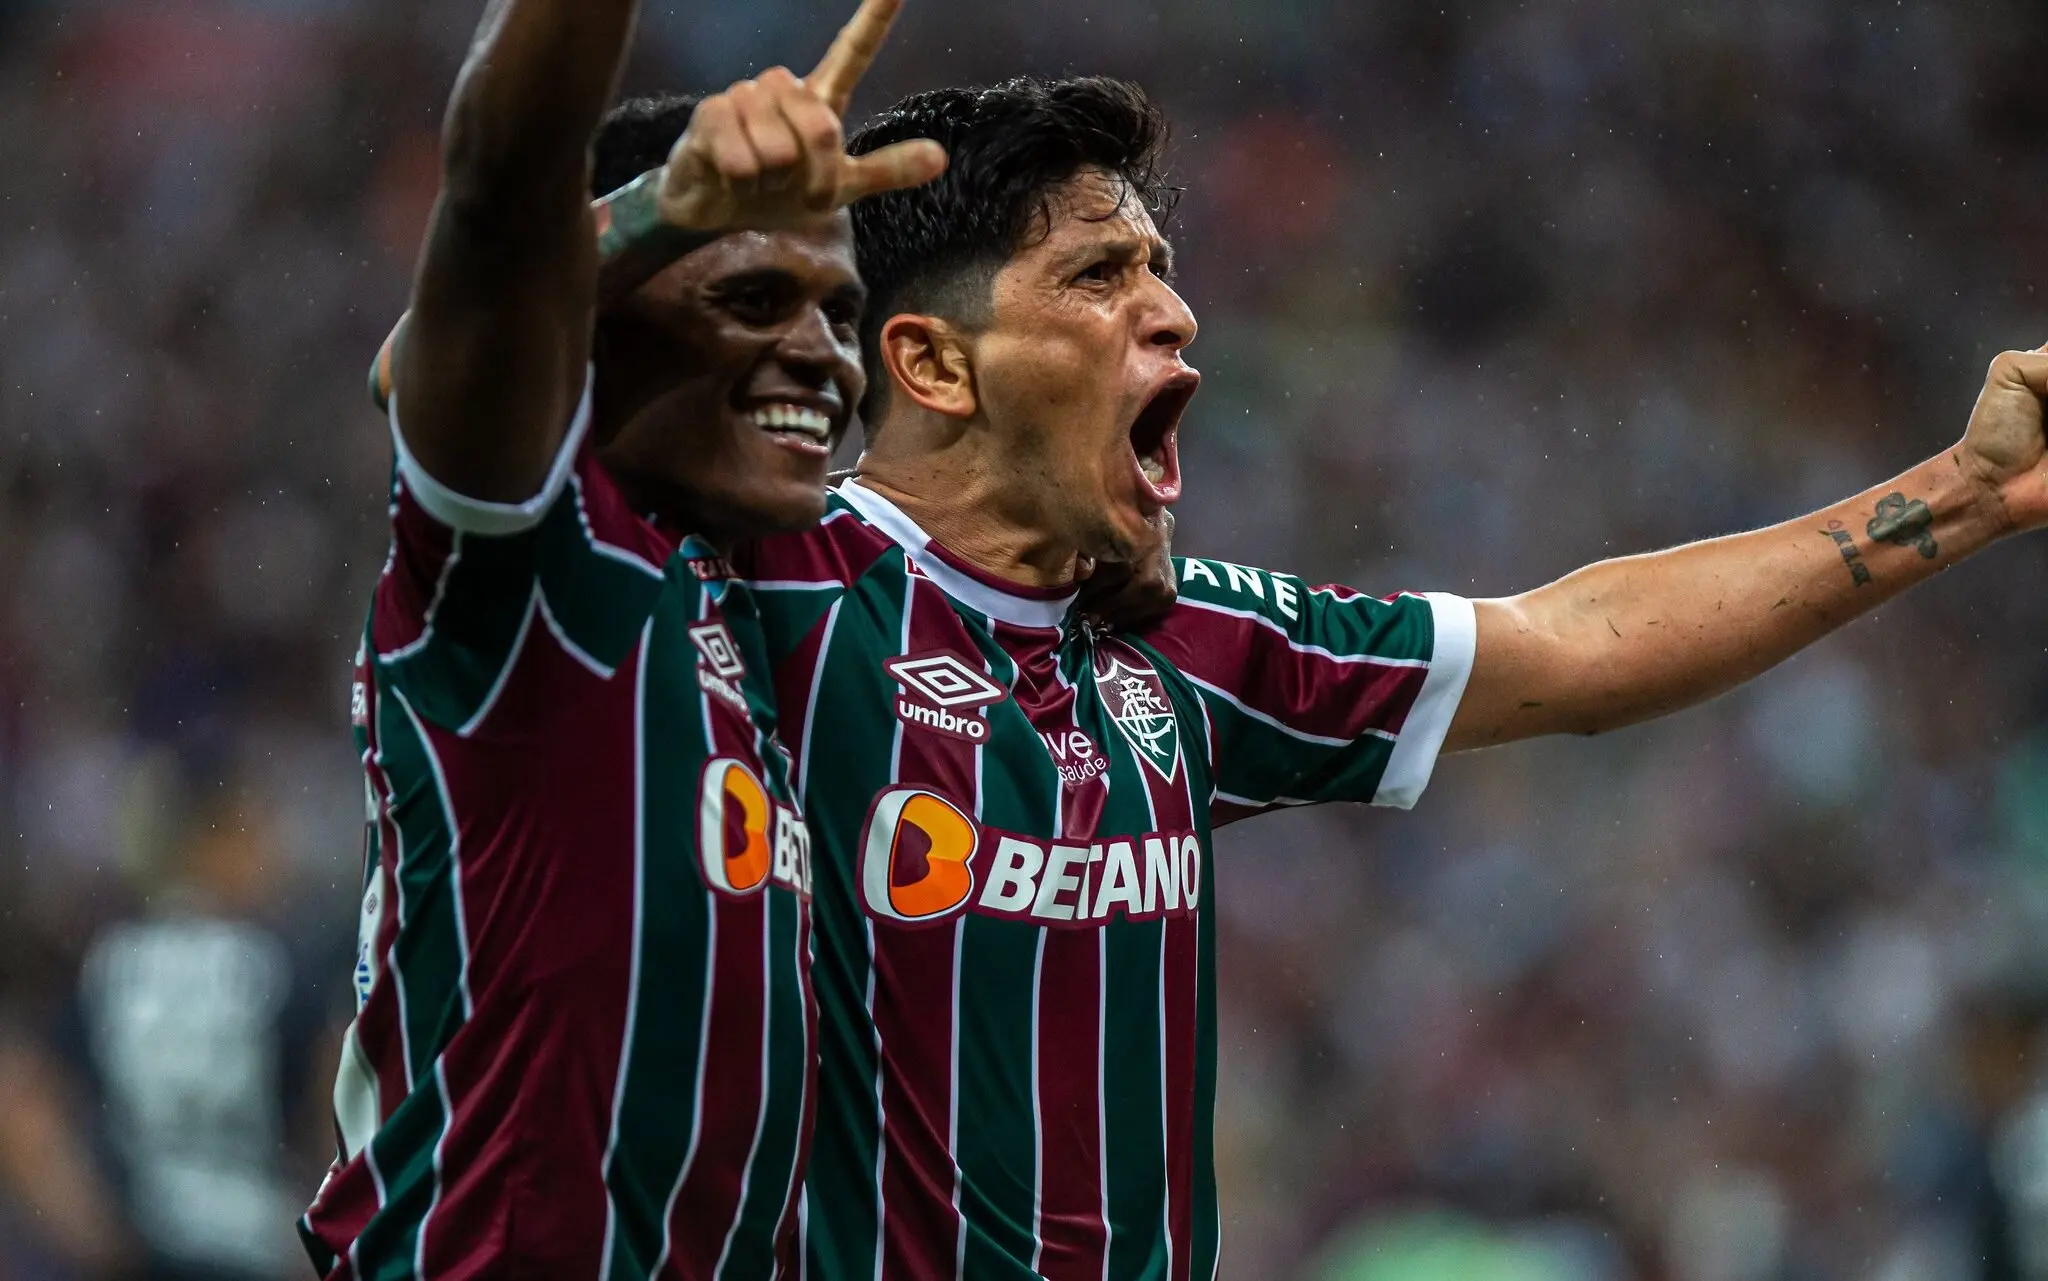 Cano foi questionado sobre não ter cobrado o pênalti que poderia ter dado o primeiro gol ao Fluminense